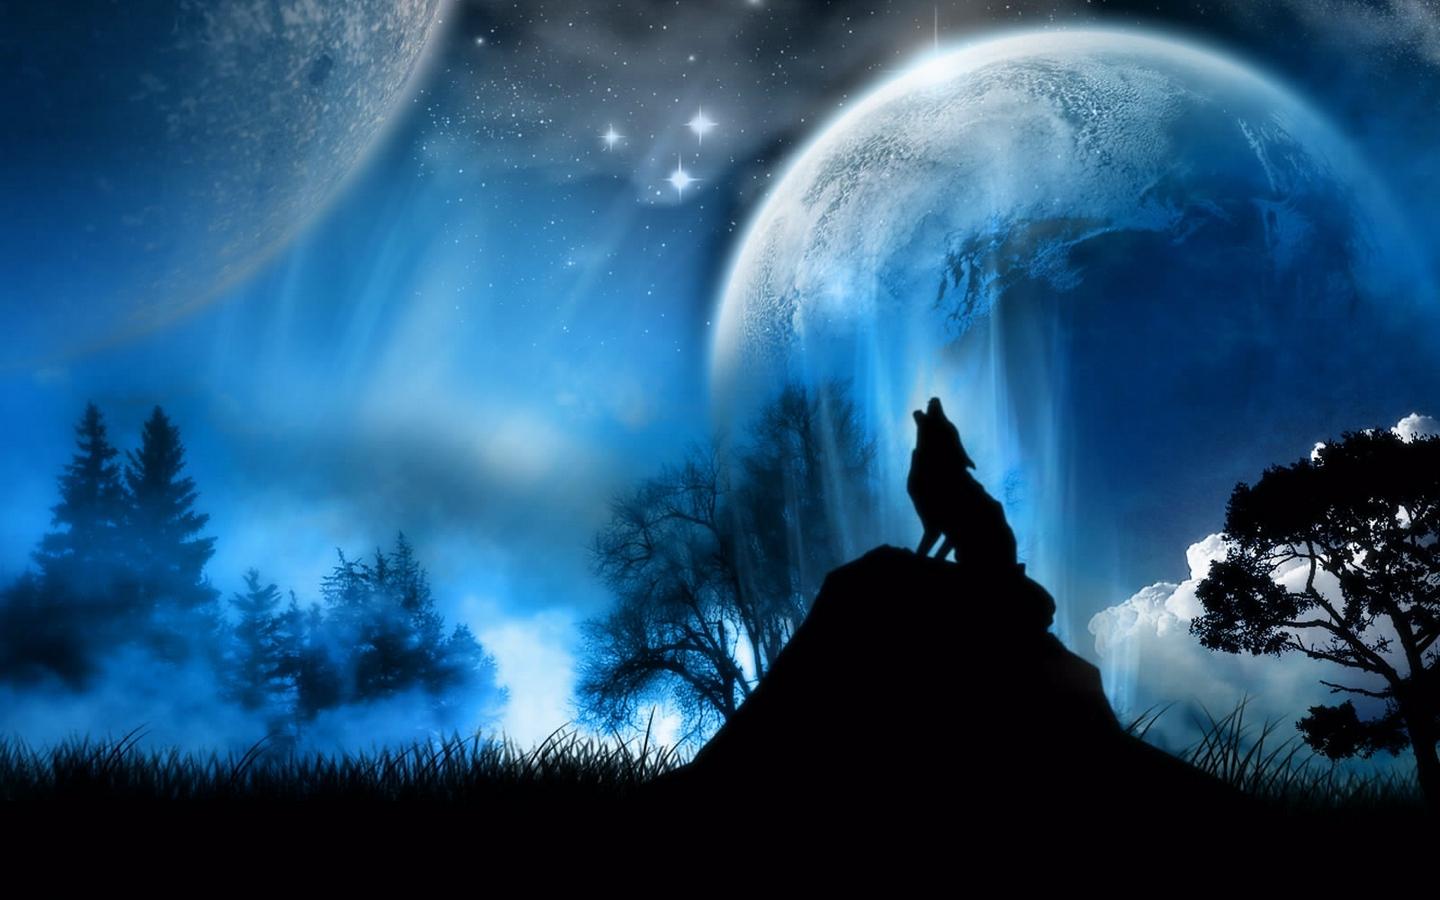 Download wallpaper 1440x900 moonlight, wolf, fantasy